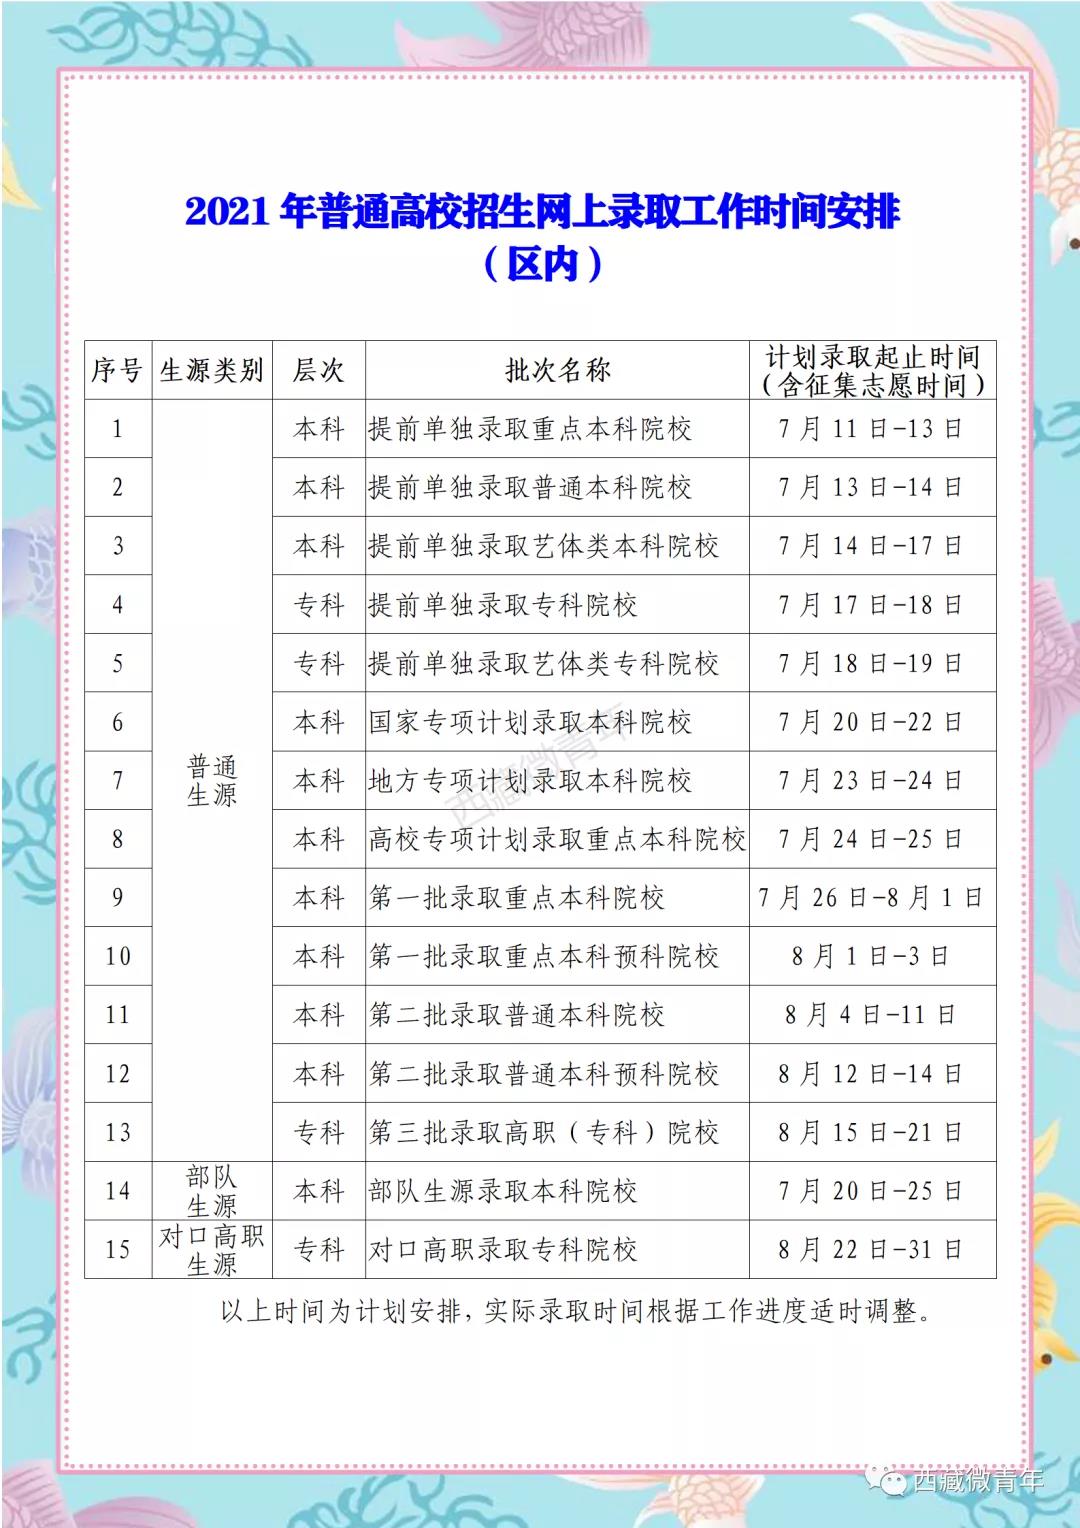 2021西藏高考各批次录取时间公布